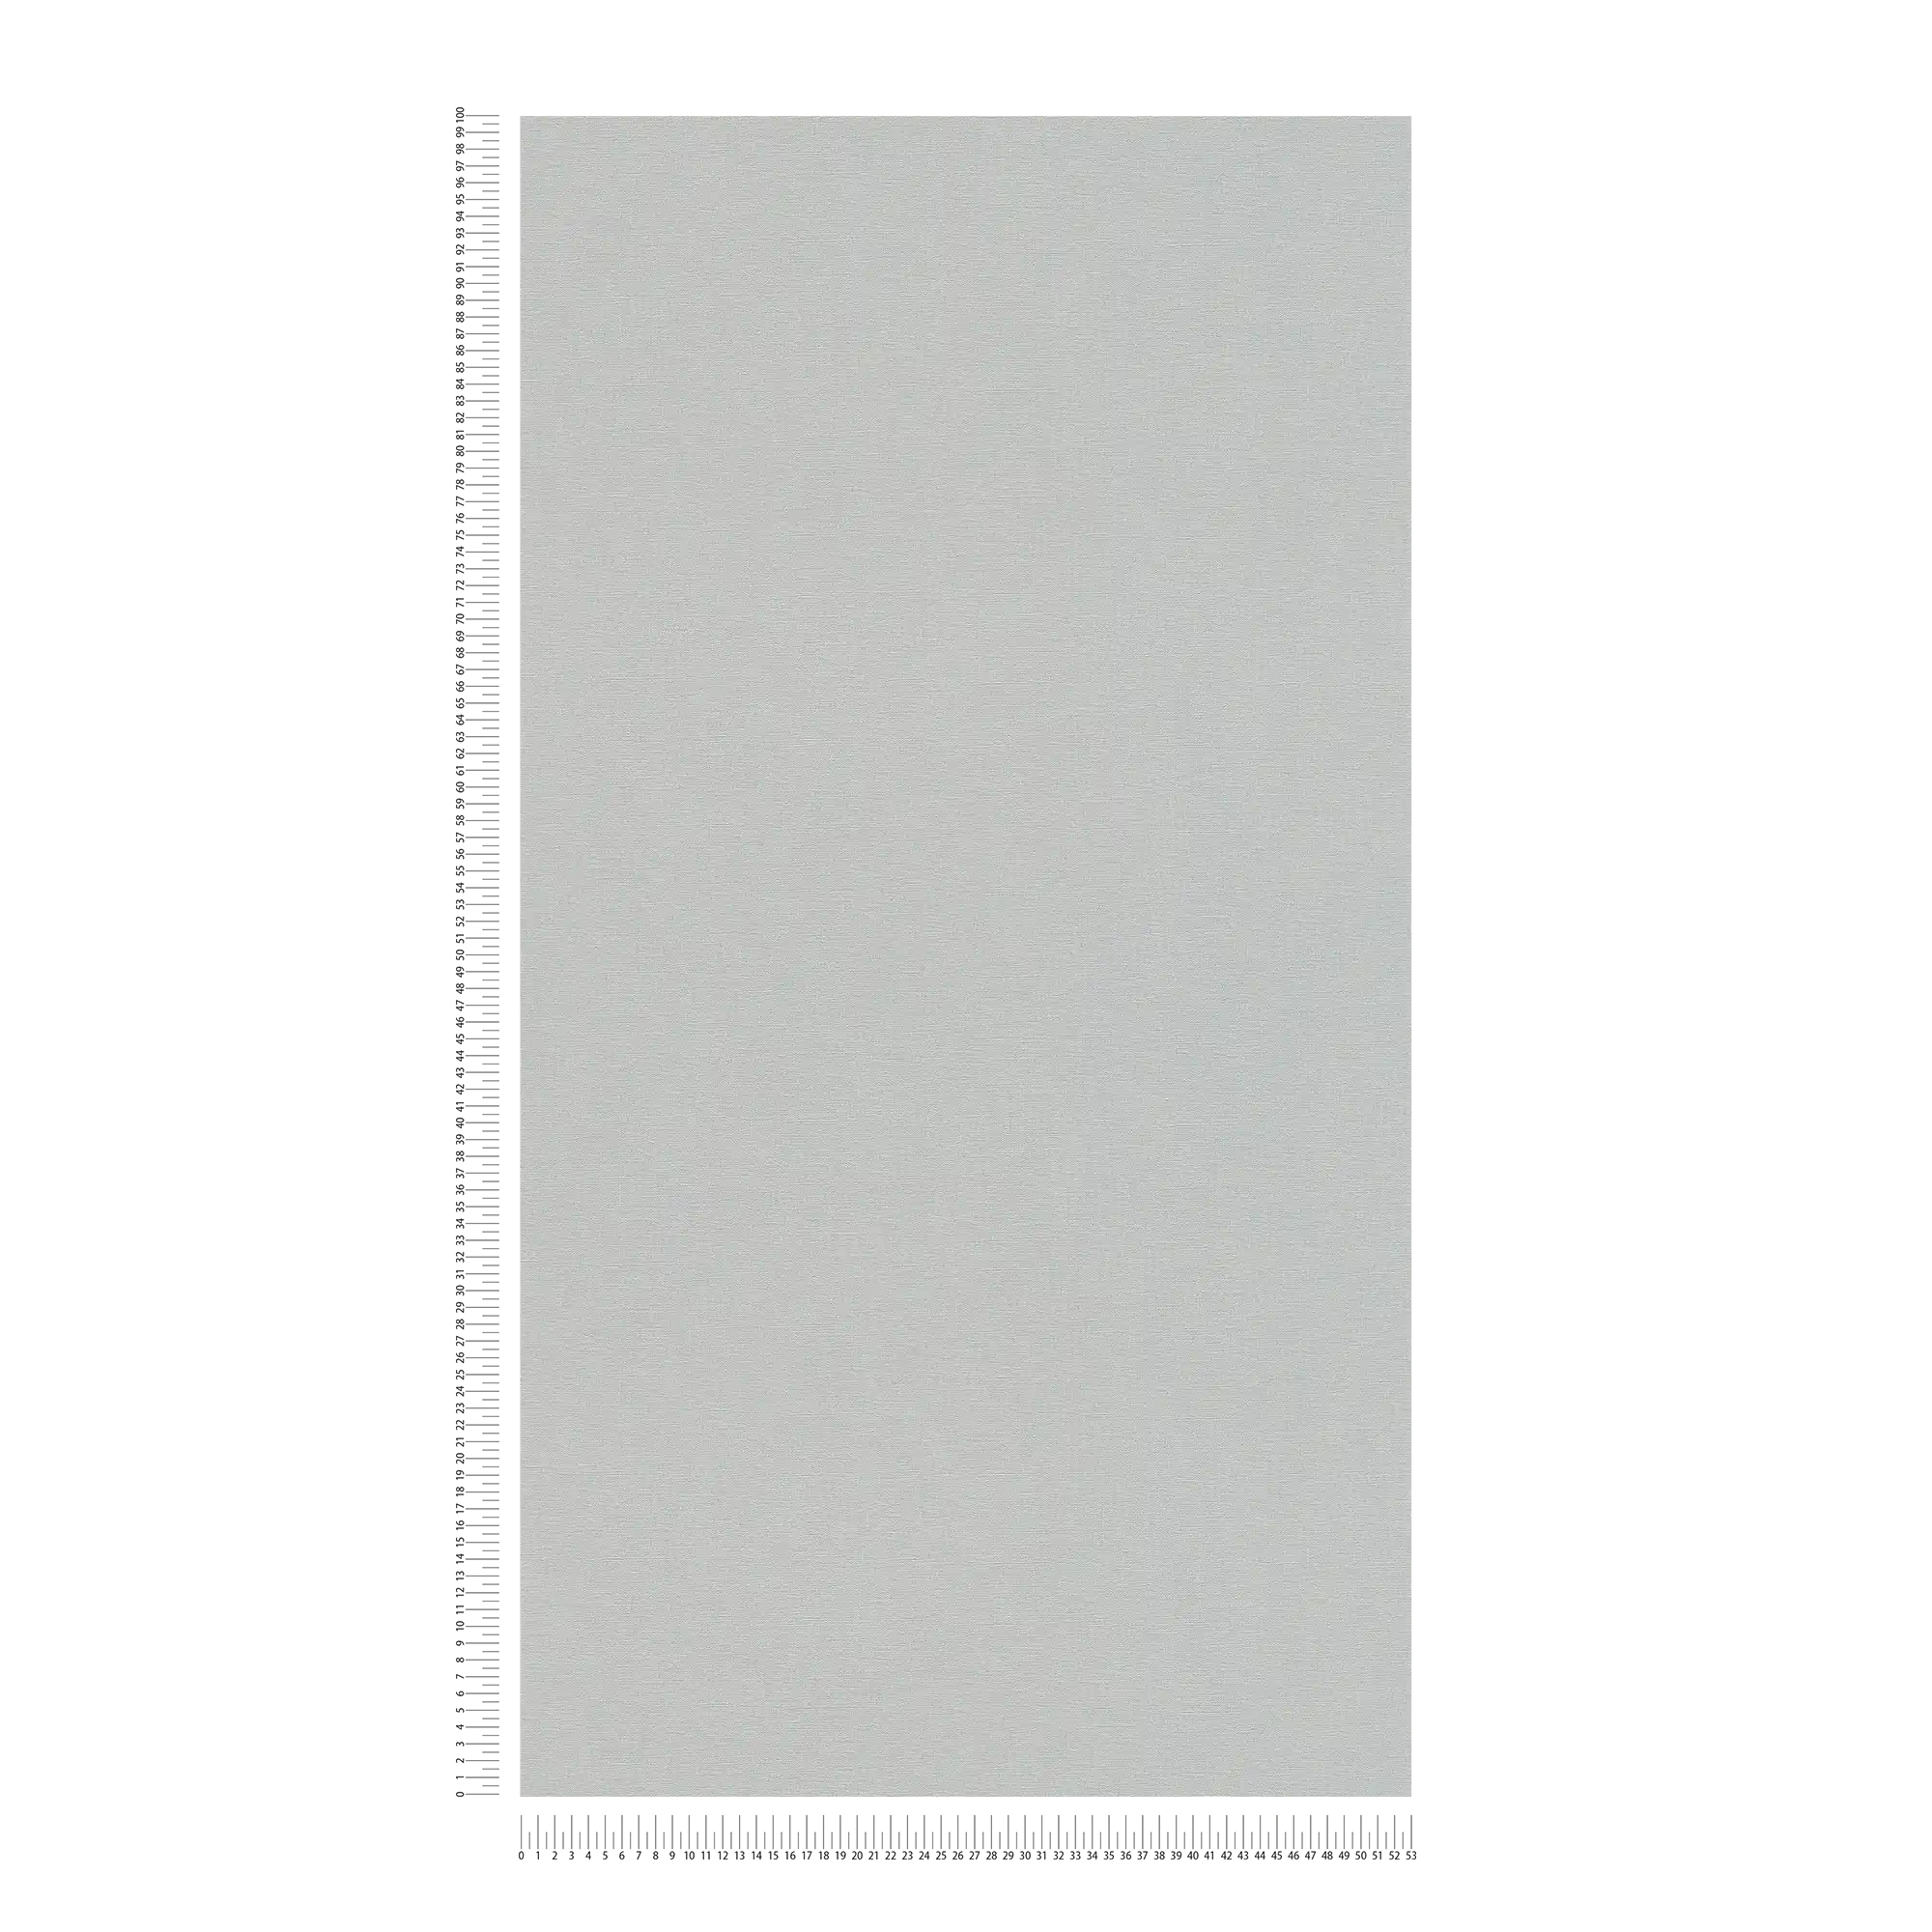             Carta da parati a tinta unita con texture leggera - grigio, grigio scuro
        